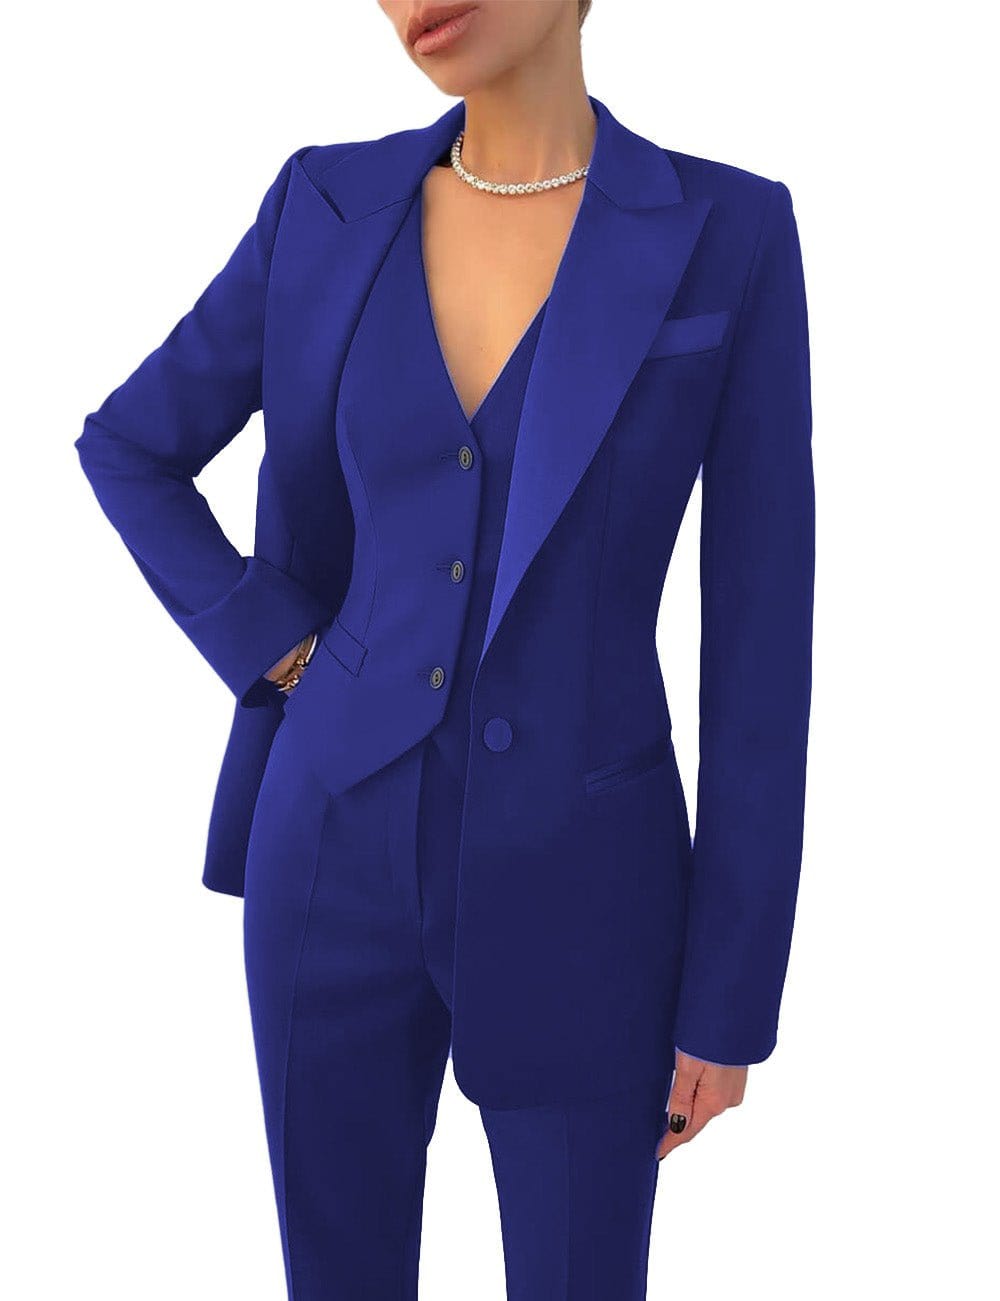 Royal Blue Pantsuit for Women,business Women Suit With Vest, Blue